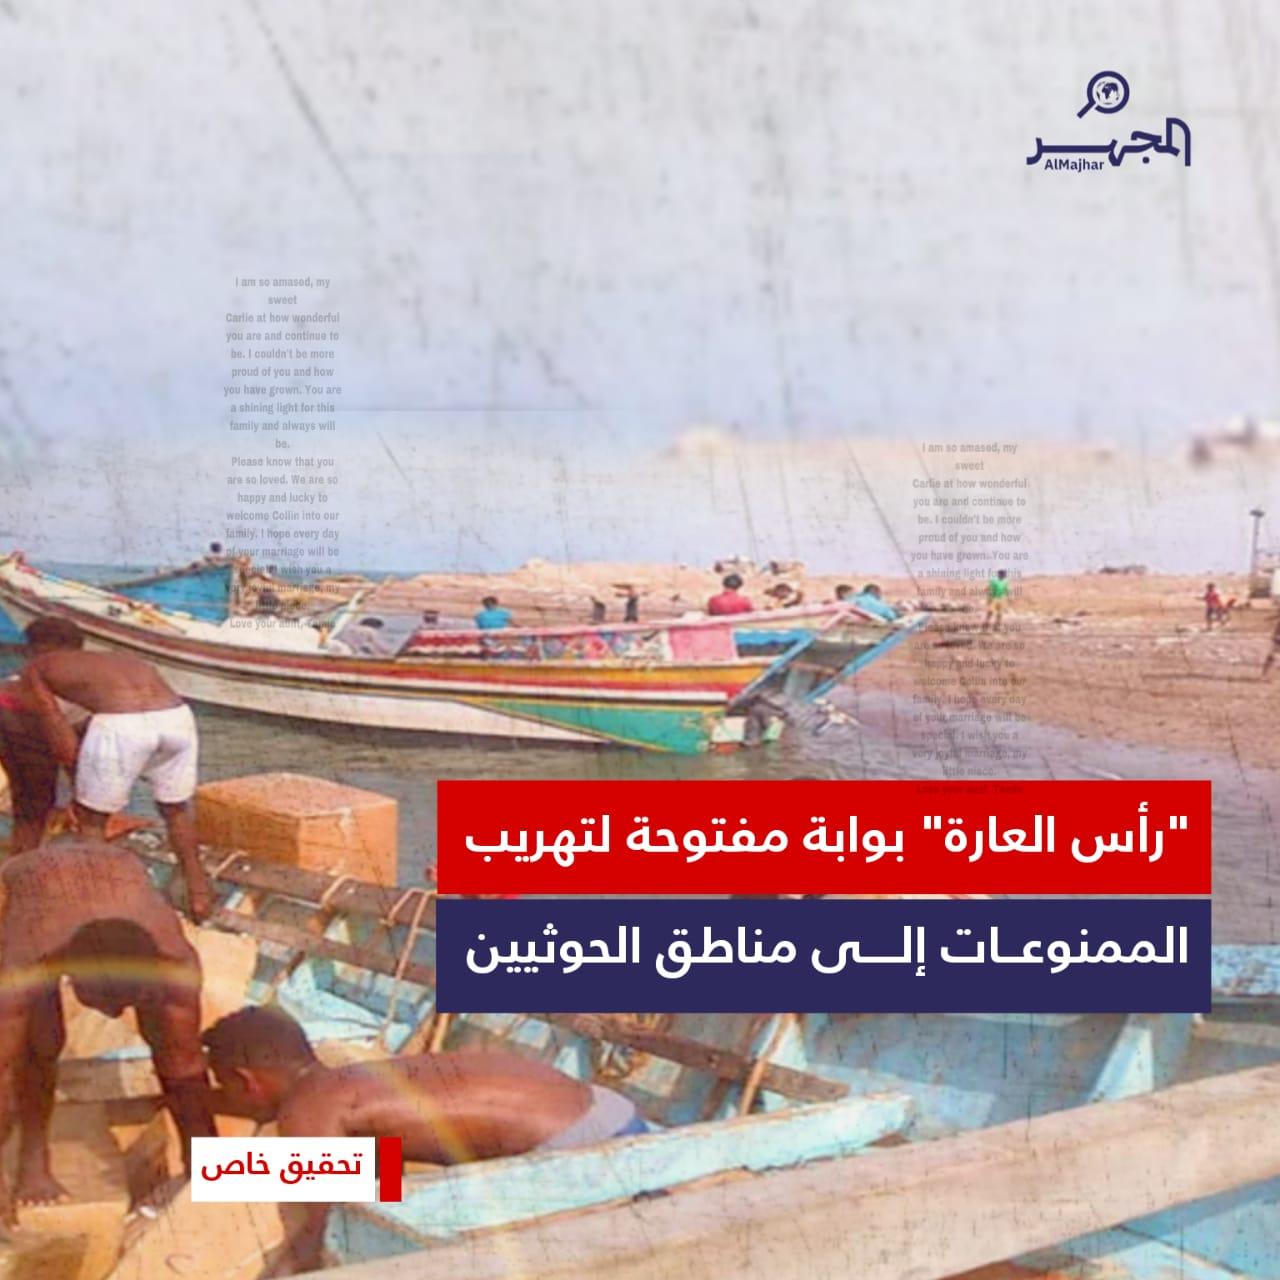 "رأس العارة" بوابة مفتوحة لتهريب الممنوعات إلى مناطق الحوثيين (تحقيق خاص)